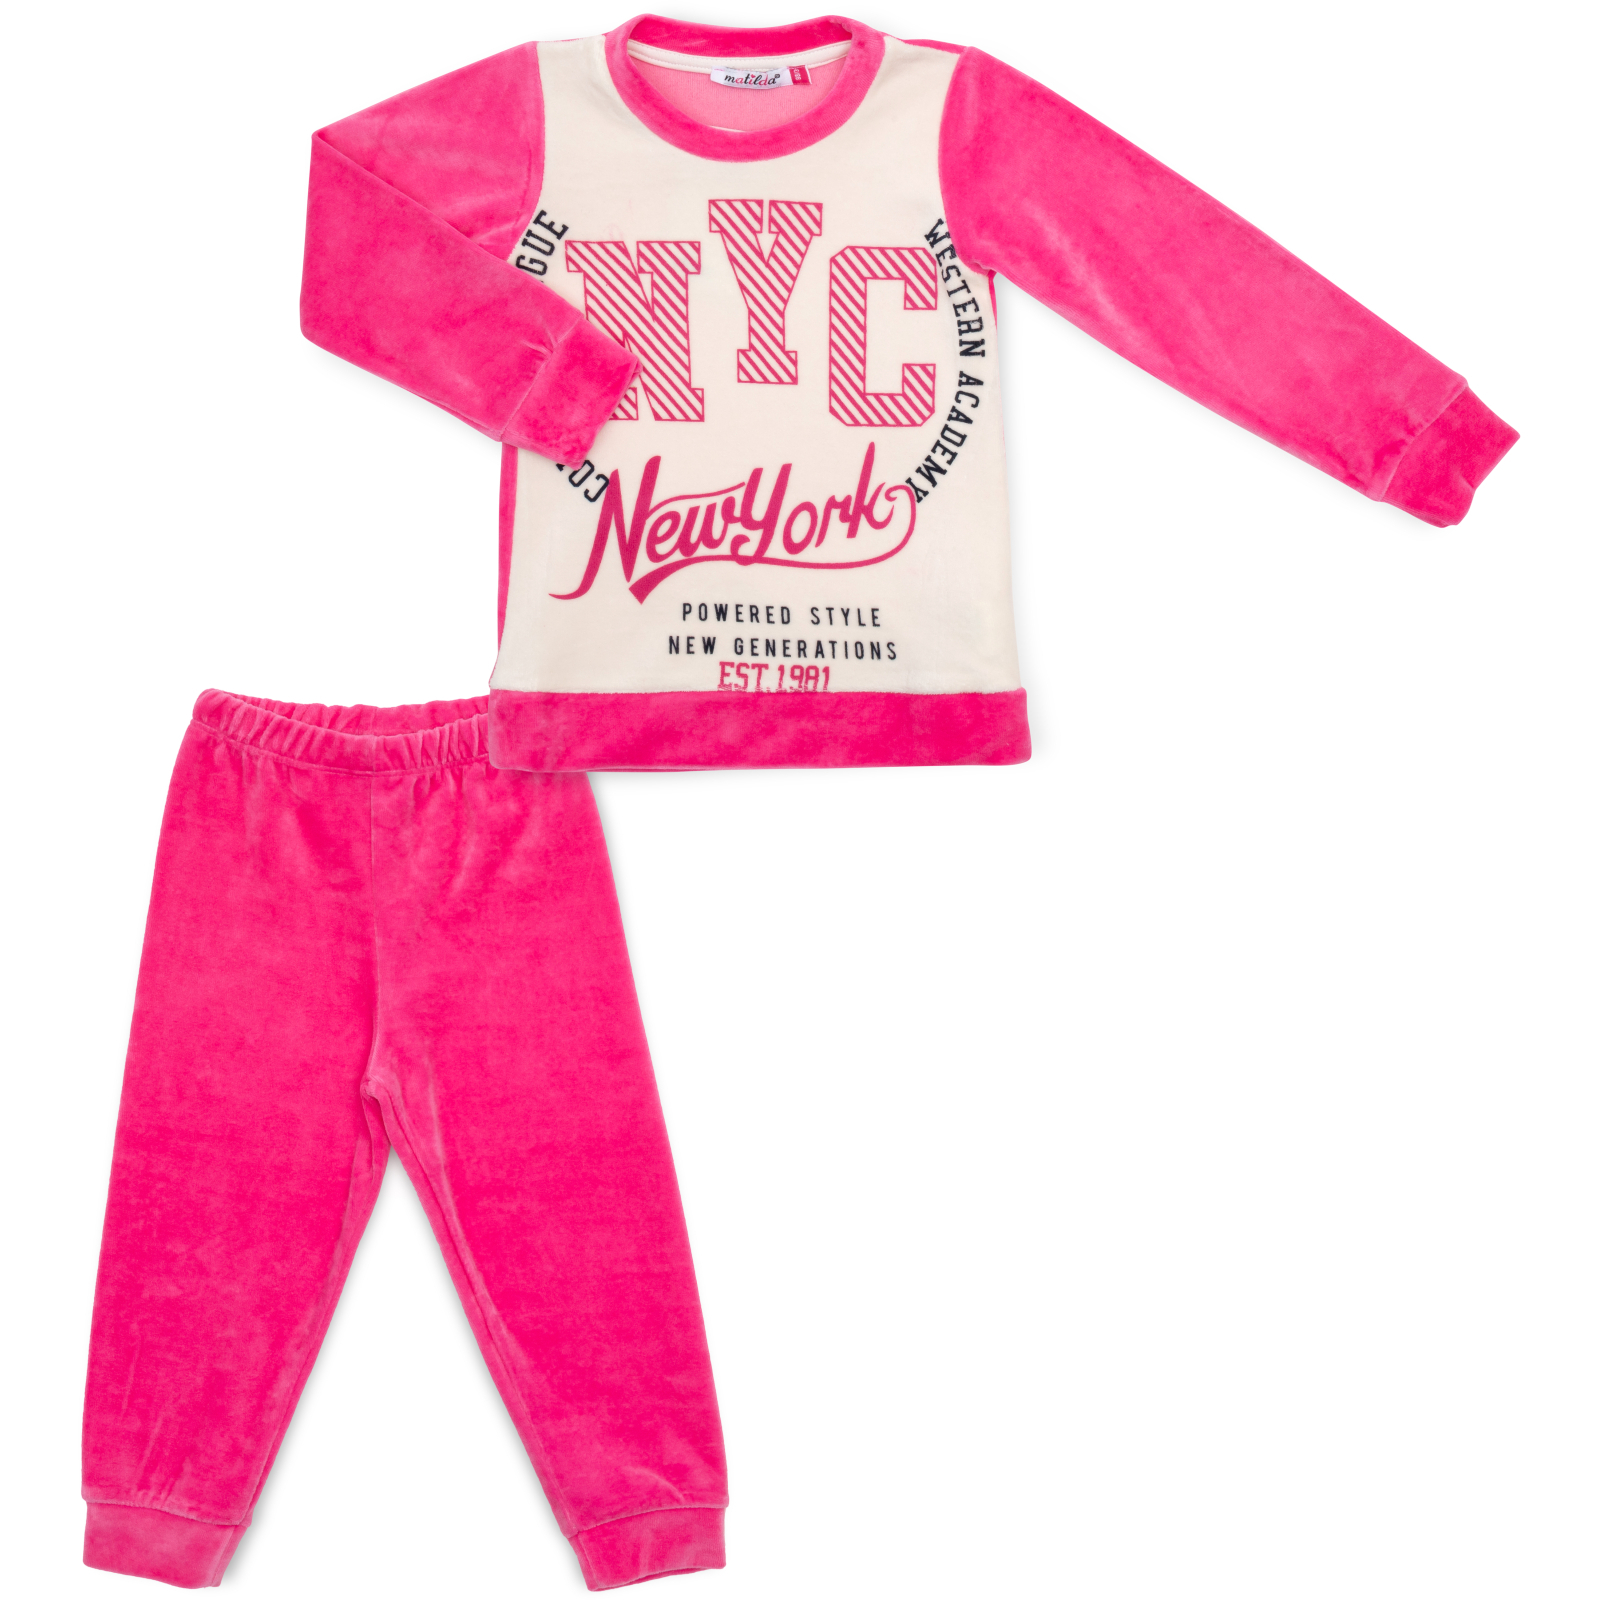 Пижама Matilda велюровая (7571-3-122G-pink)